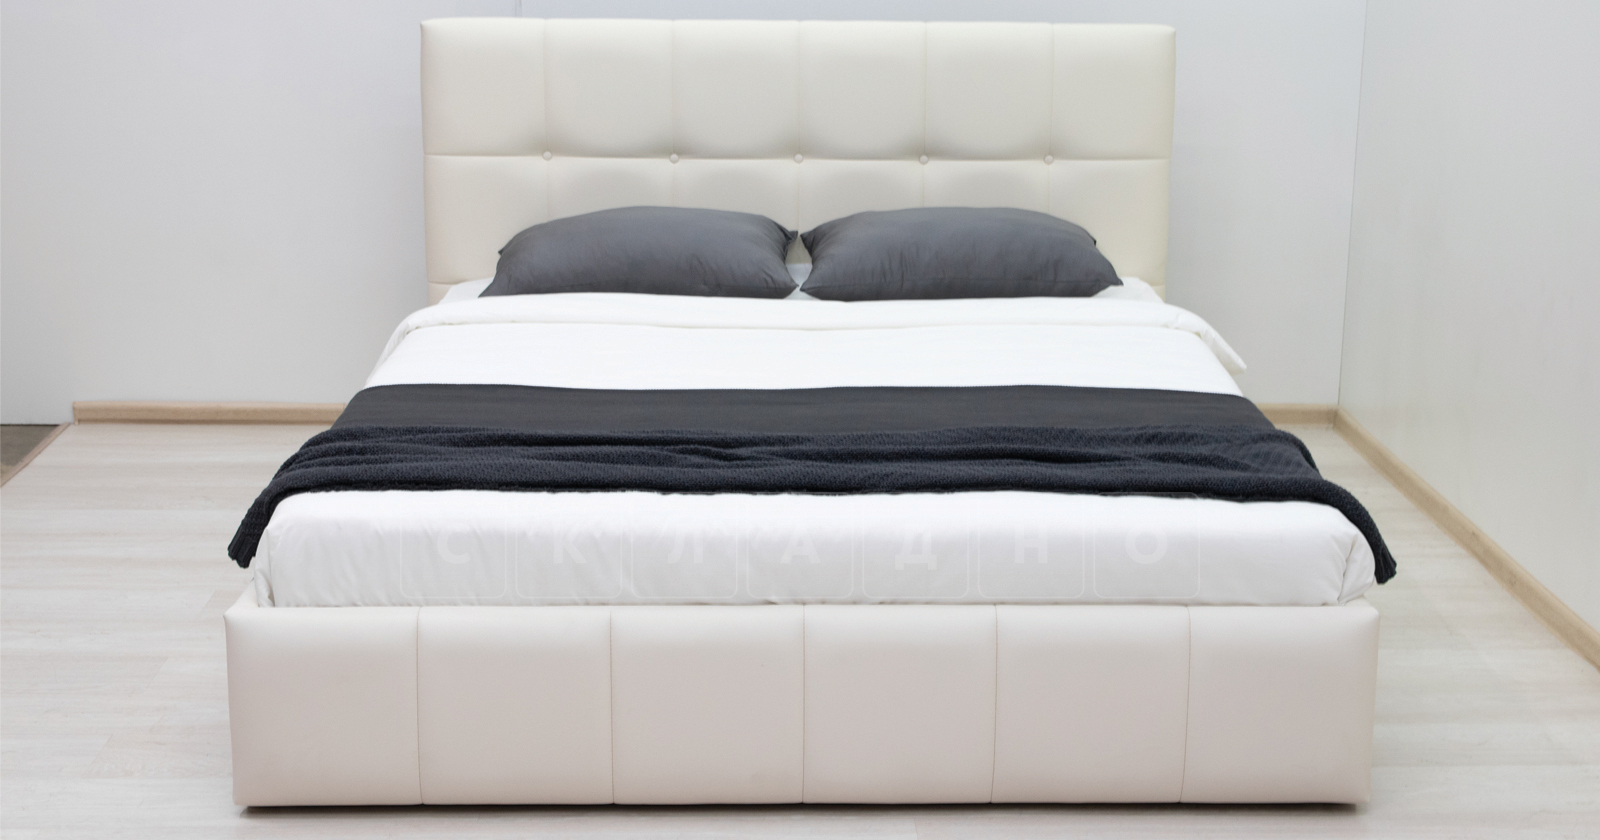 Мягкая кровать Хлоя 160 см сливочный с подъемным механизмом фото 5 | интернет-магазин Складно